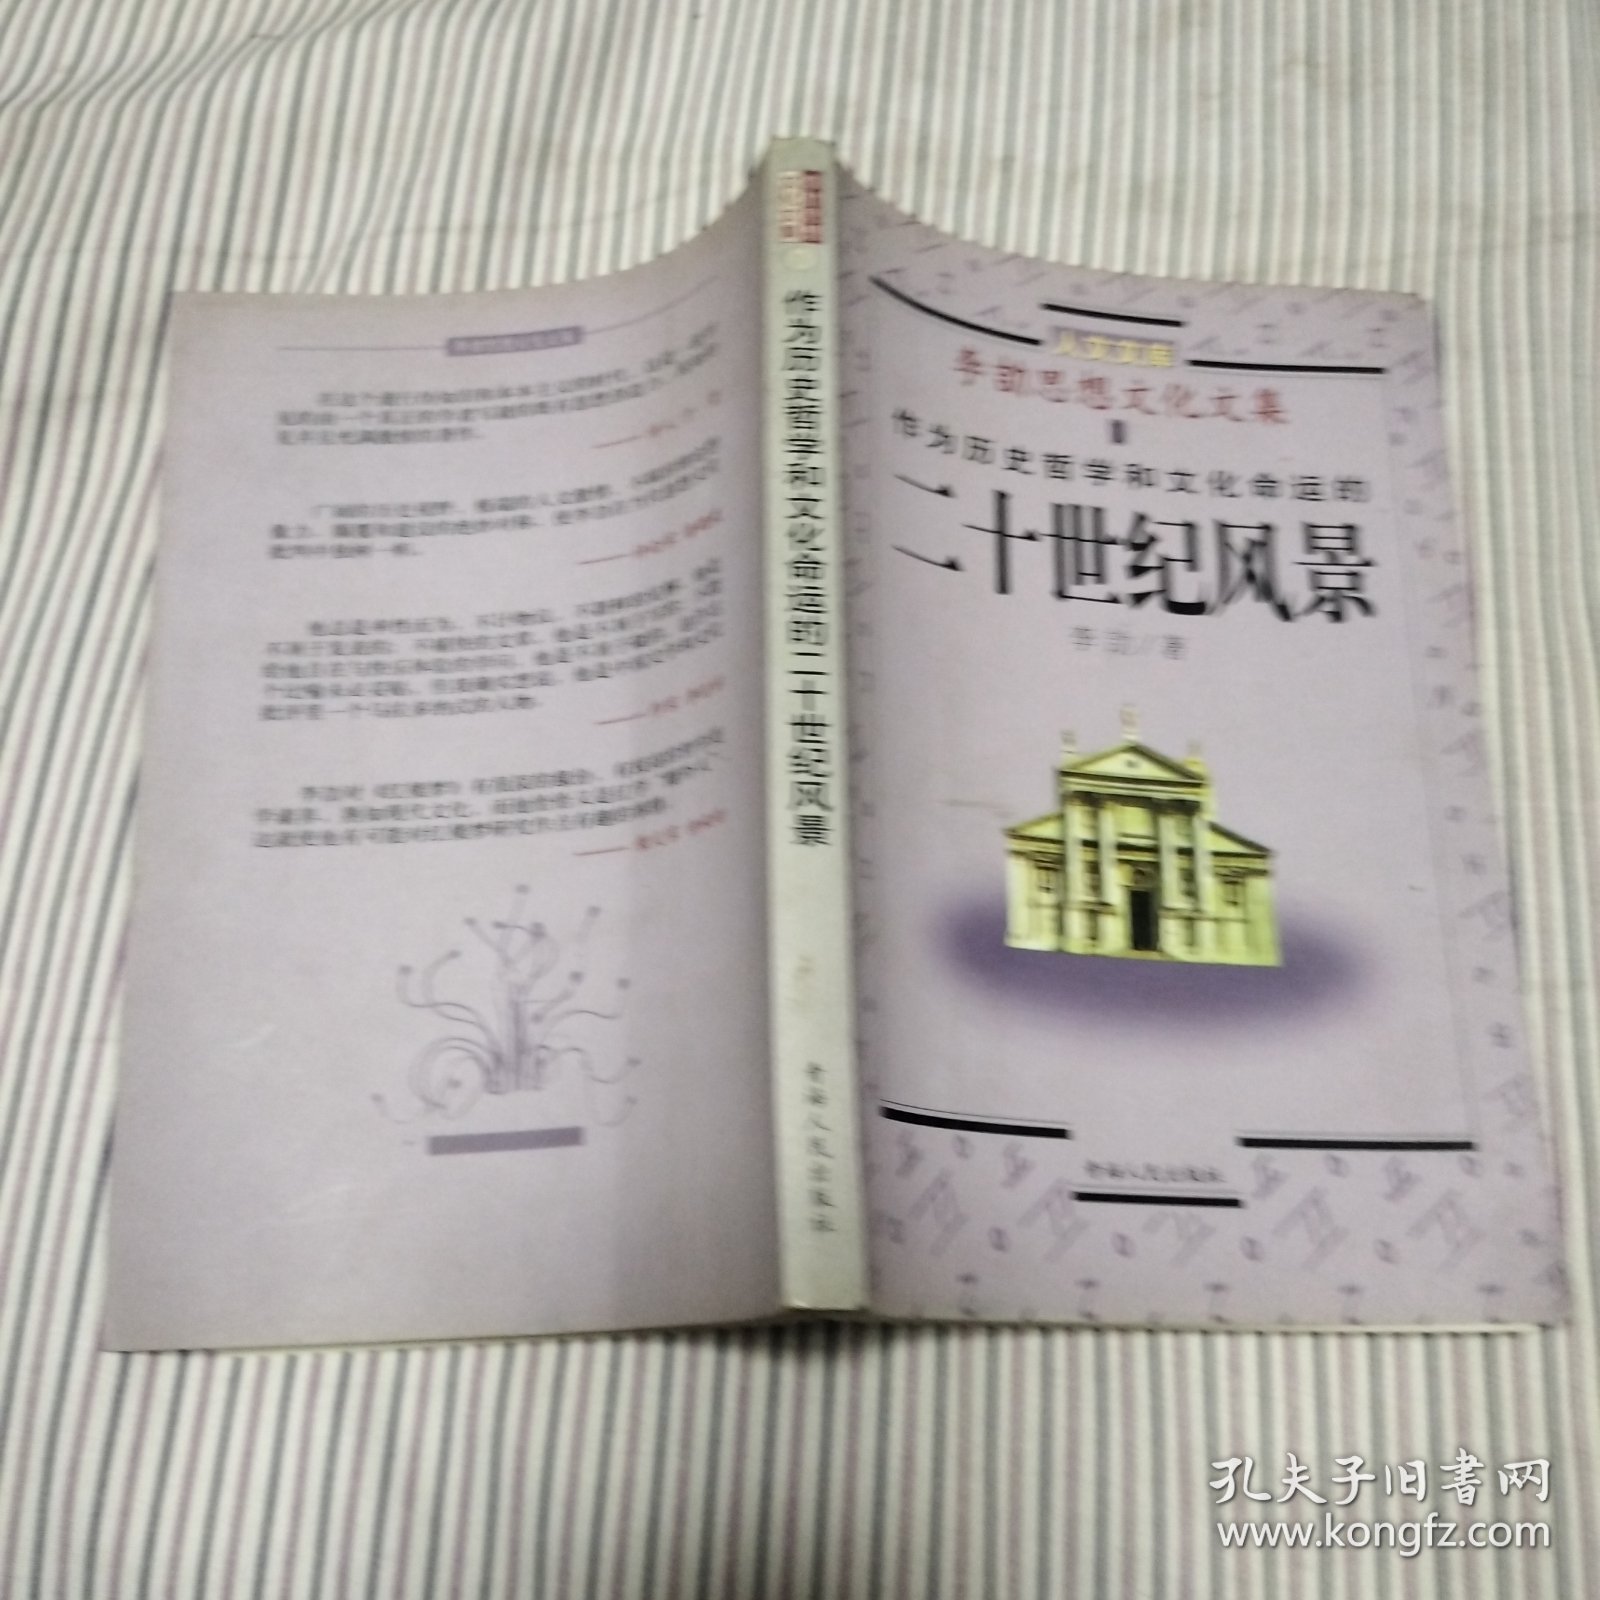 李劼思想文化文集.1.作为历史哲学和文化命运的二十世纪风景